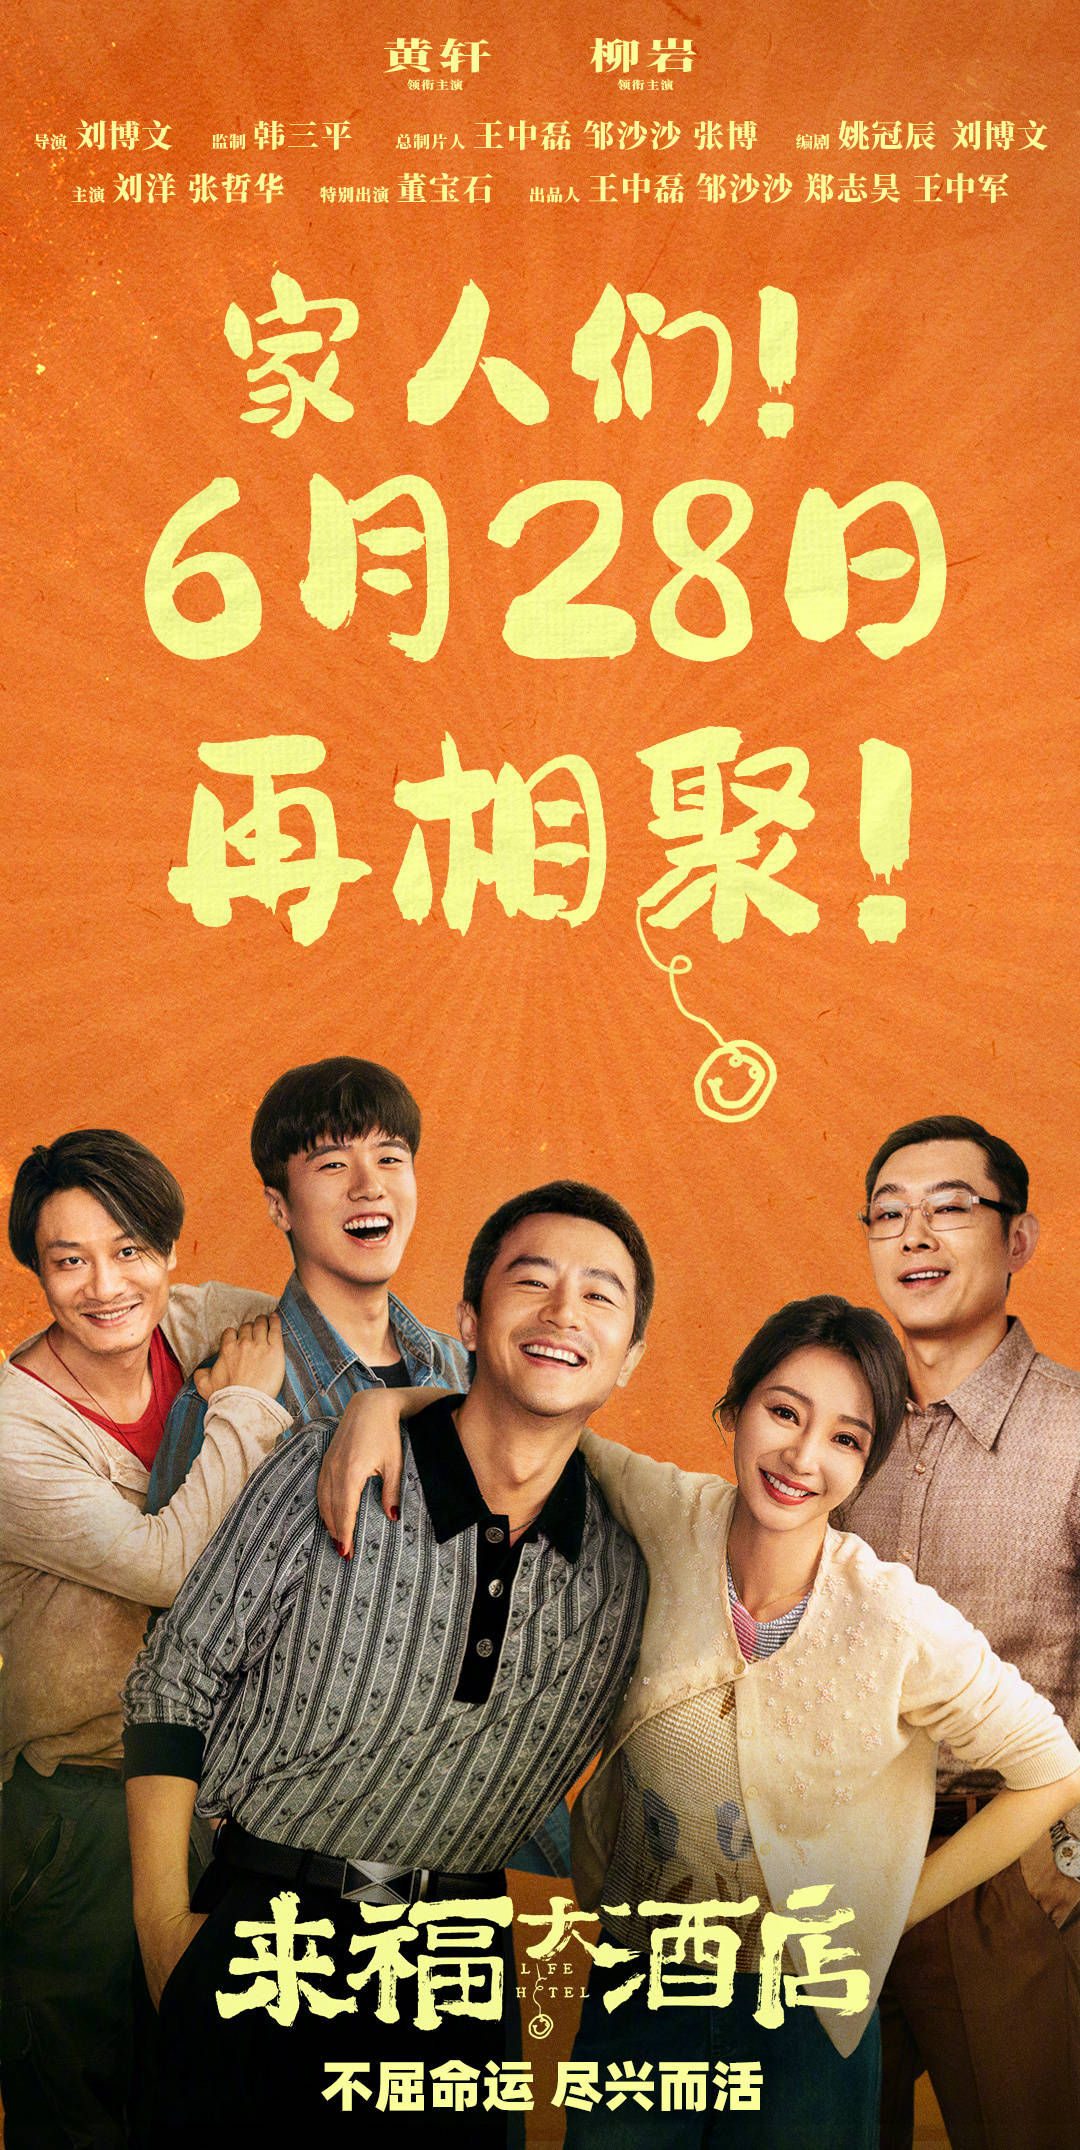 黄轩柳岩主演电影《来福大酒店》官宣改档至6月28日上映 原定6月8日